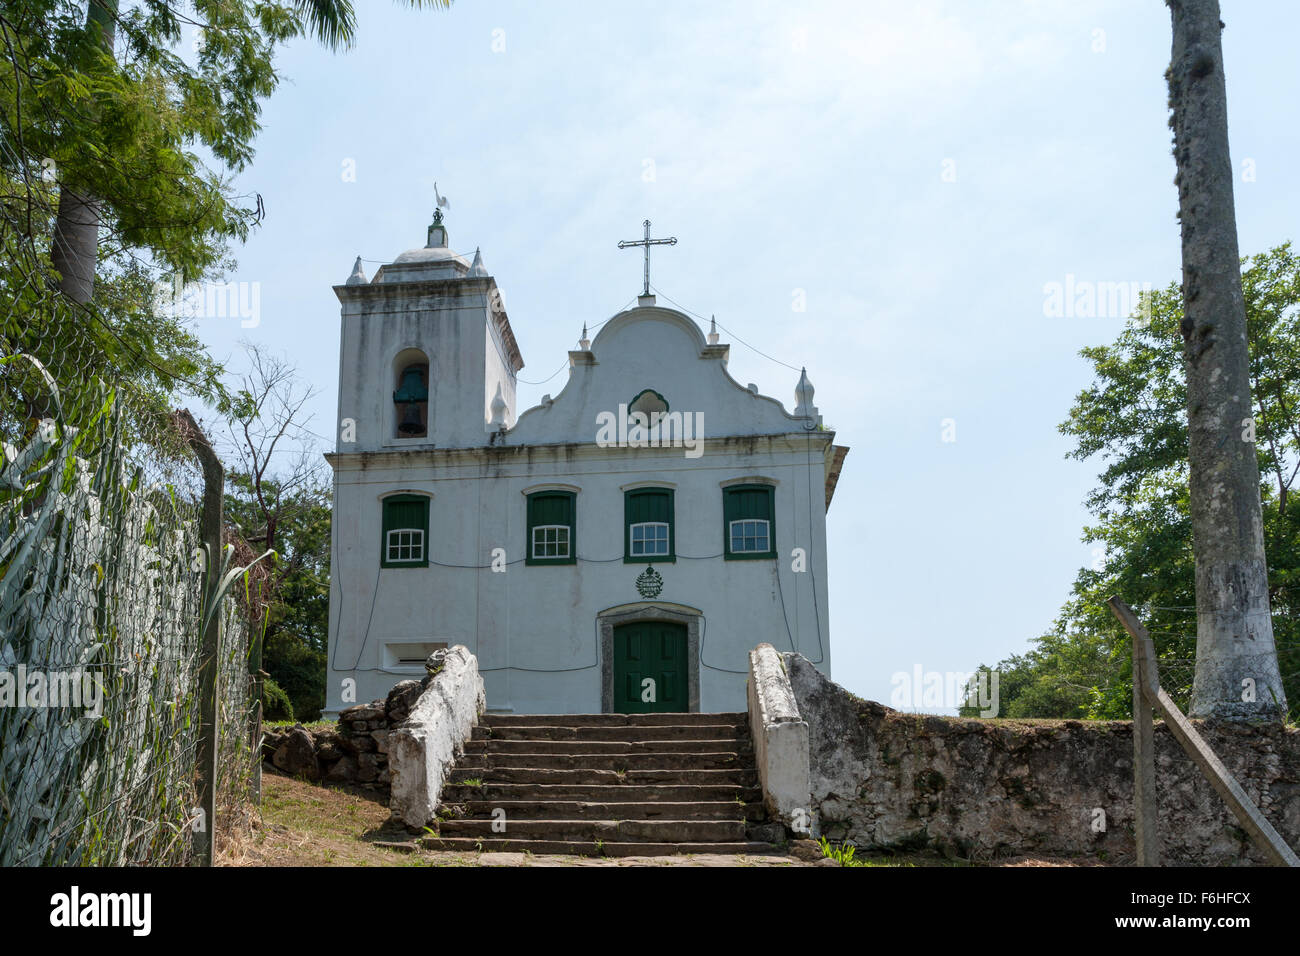 Igreja da Freguesia de Santana (Freguesia de Santana Church), Freguesia de Santana, Ilha Grande, Angra dos Reis, State of Rio de Janeiro, Brazil Stock Photo